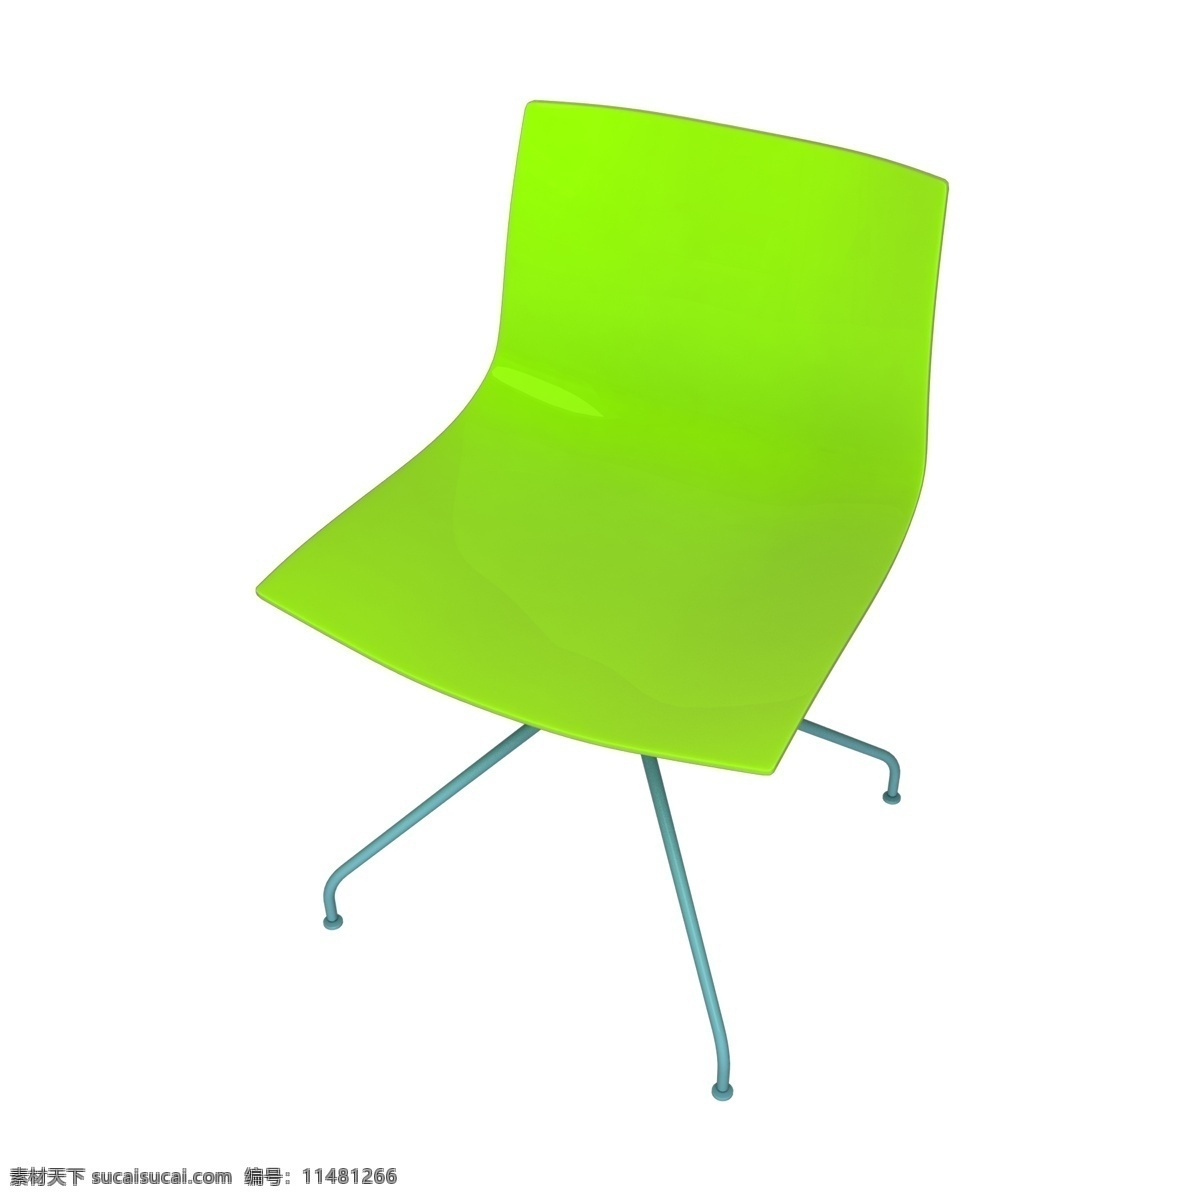 写实 质感 3d 座椅 家装 家居 家具 后现代 现代 简约 北欧 时尚 装修 家装节 座位 椅子 凳子 沙发 板凳